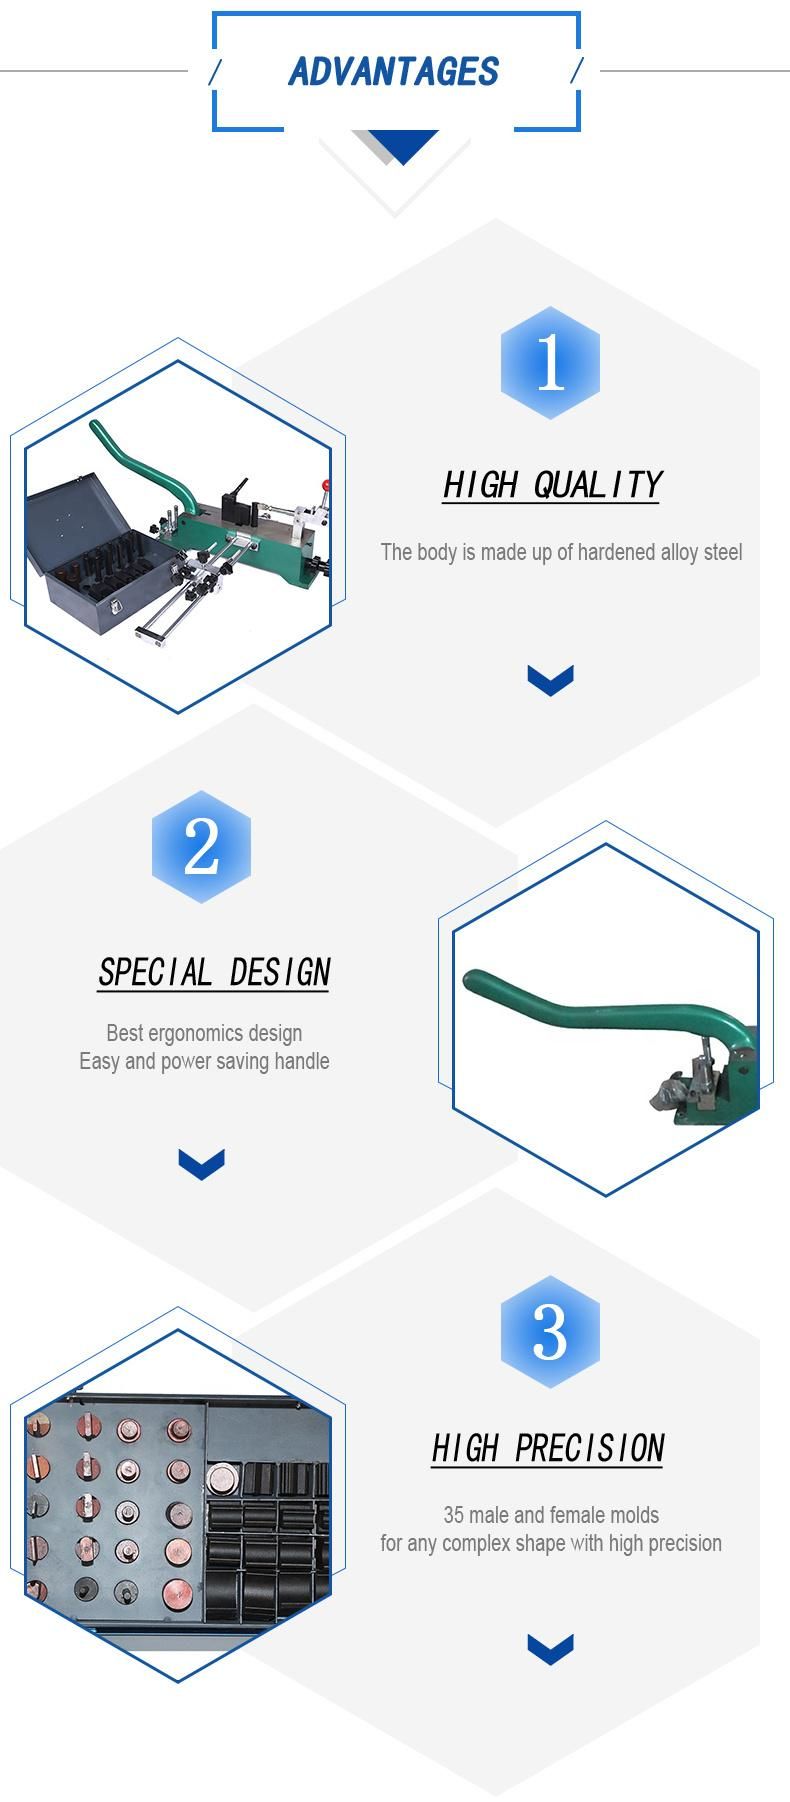 Manual Precision Steel Rule Bender Cutting Rule Bending Machine for Die Making